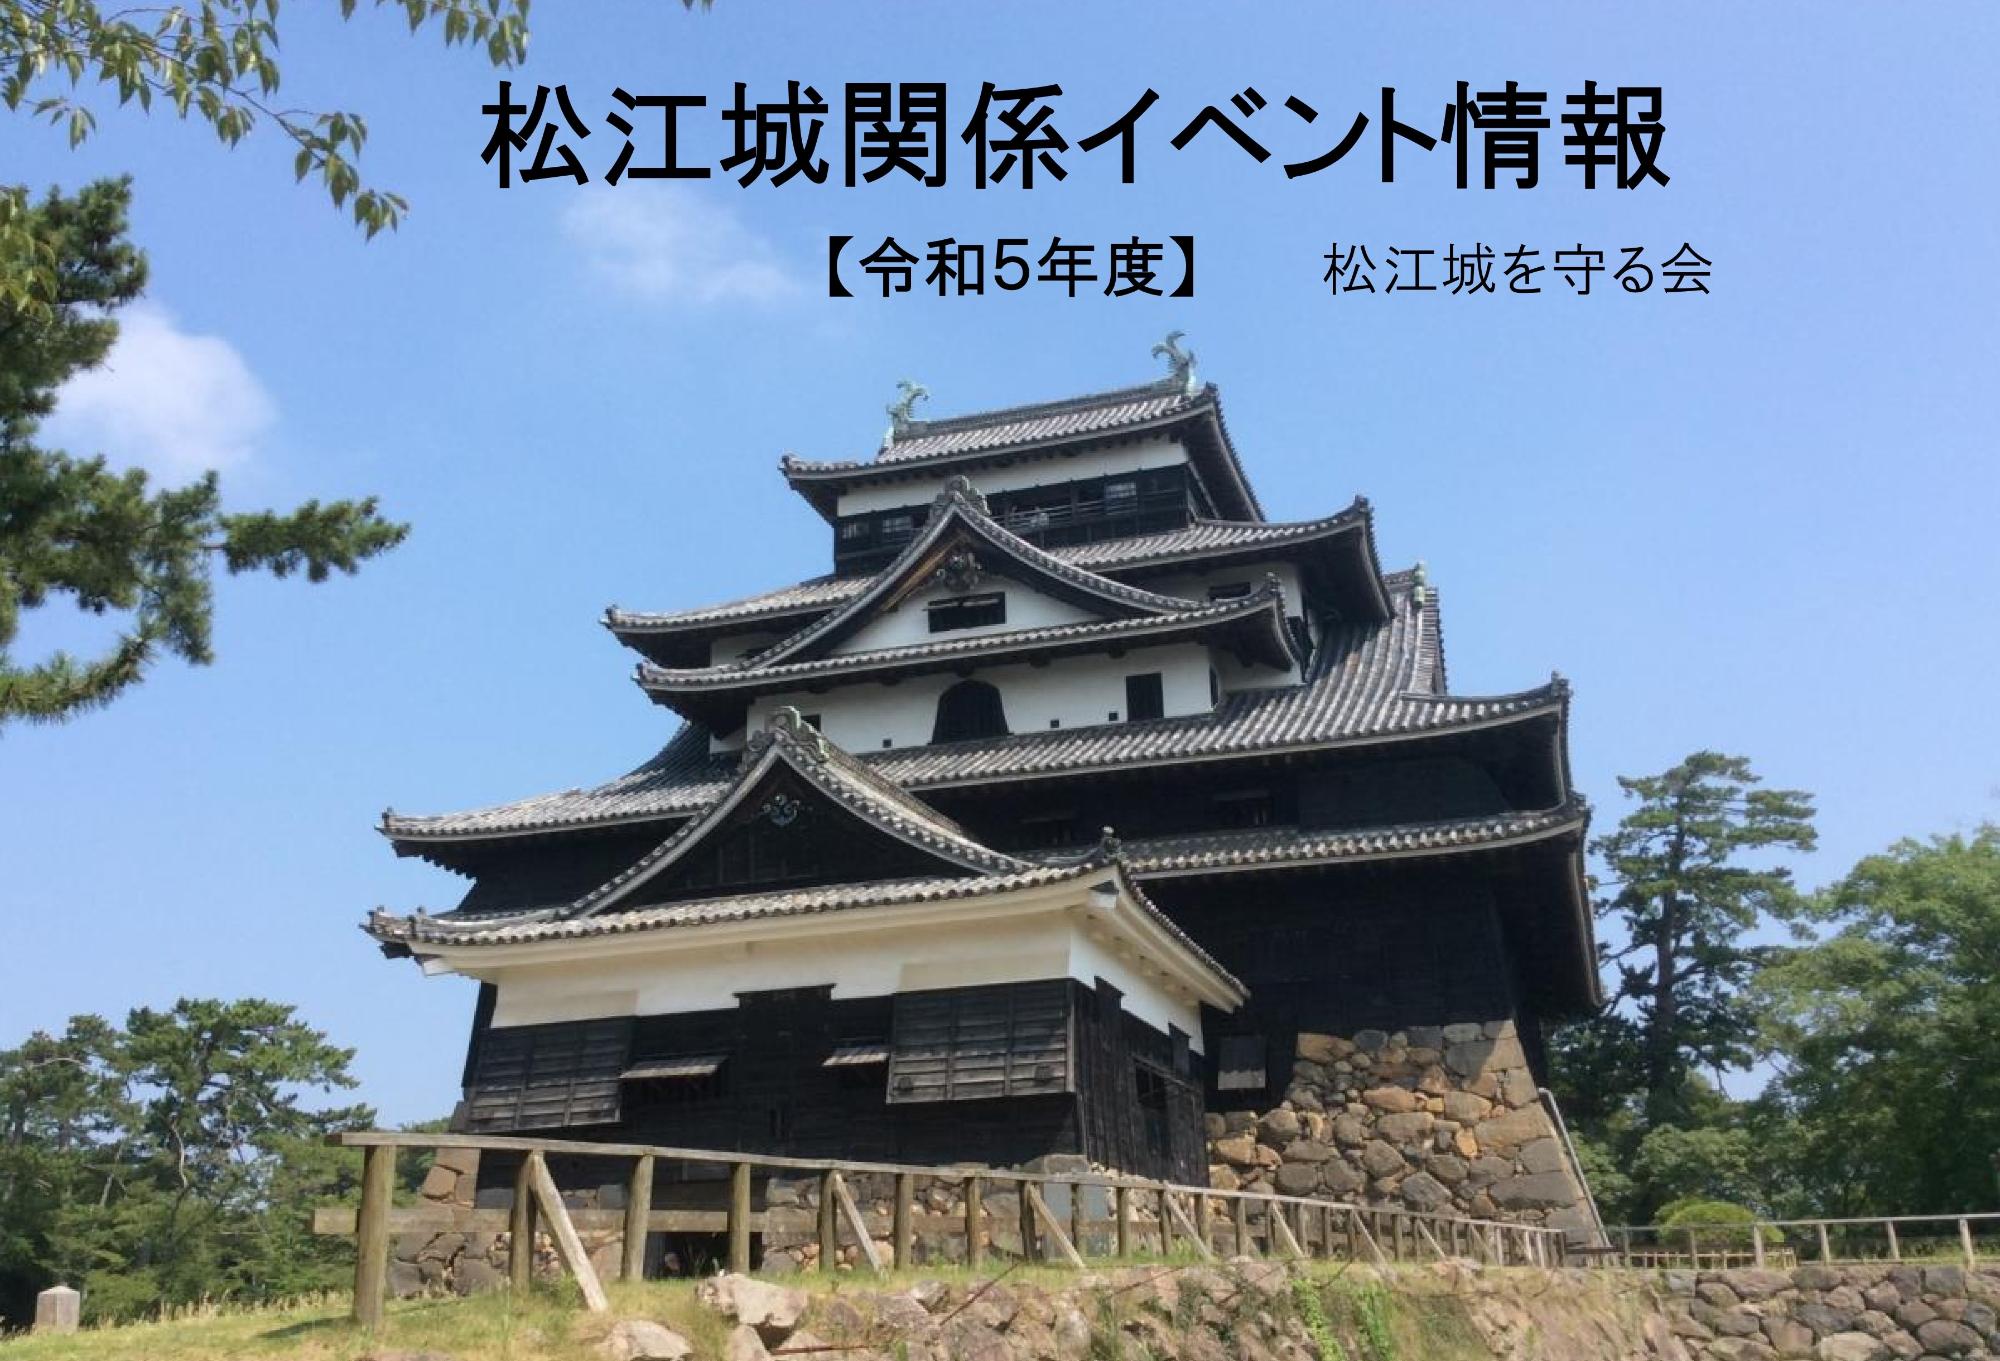 東南から見た松江城天守のバナー写真